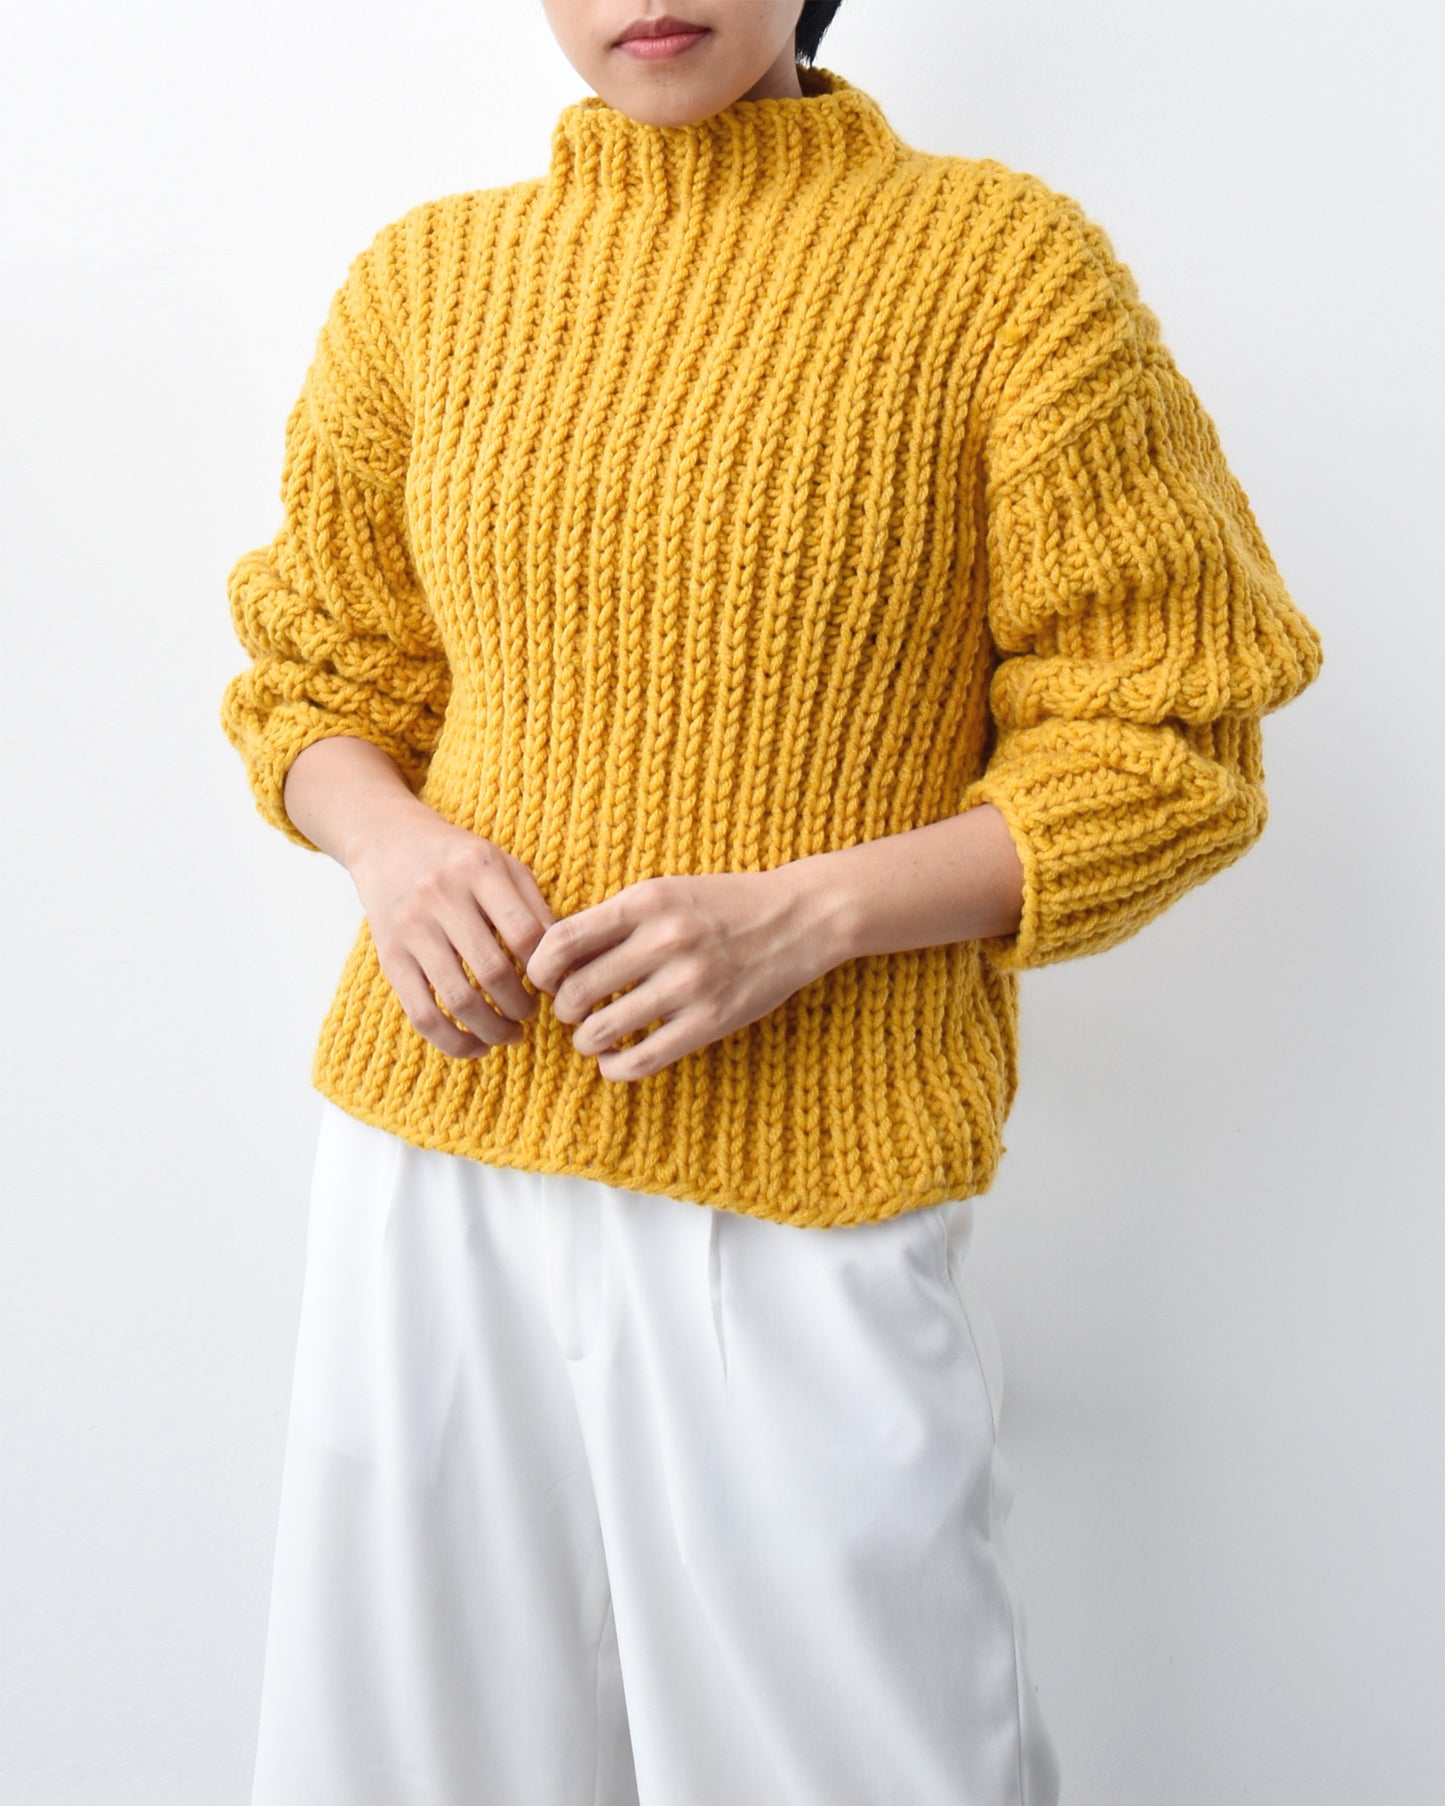 Sweater No.6 | Chunky knitting sweater pattern